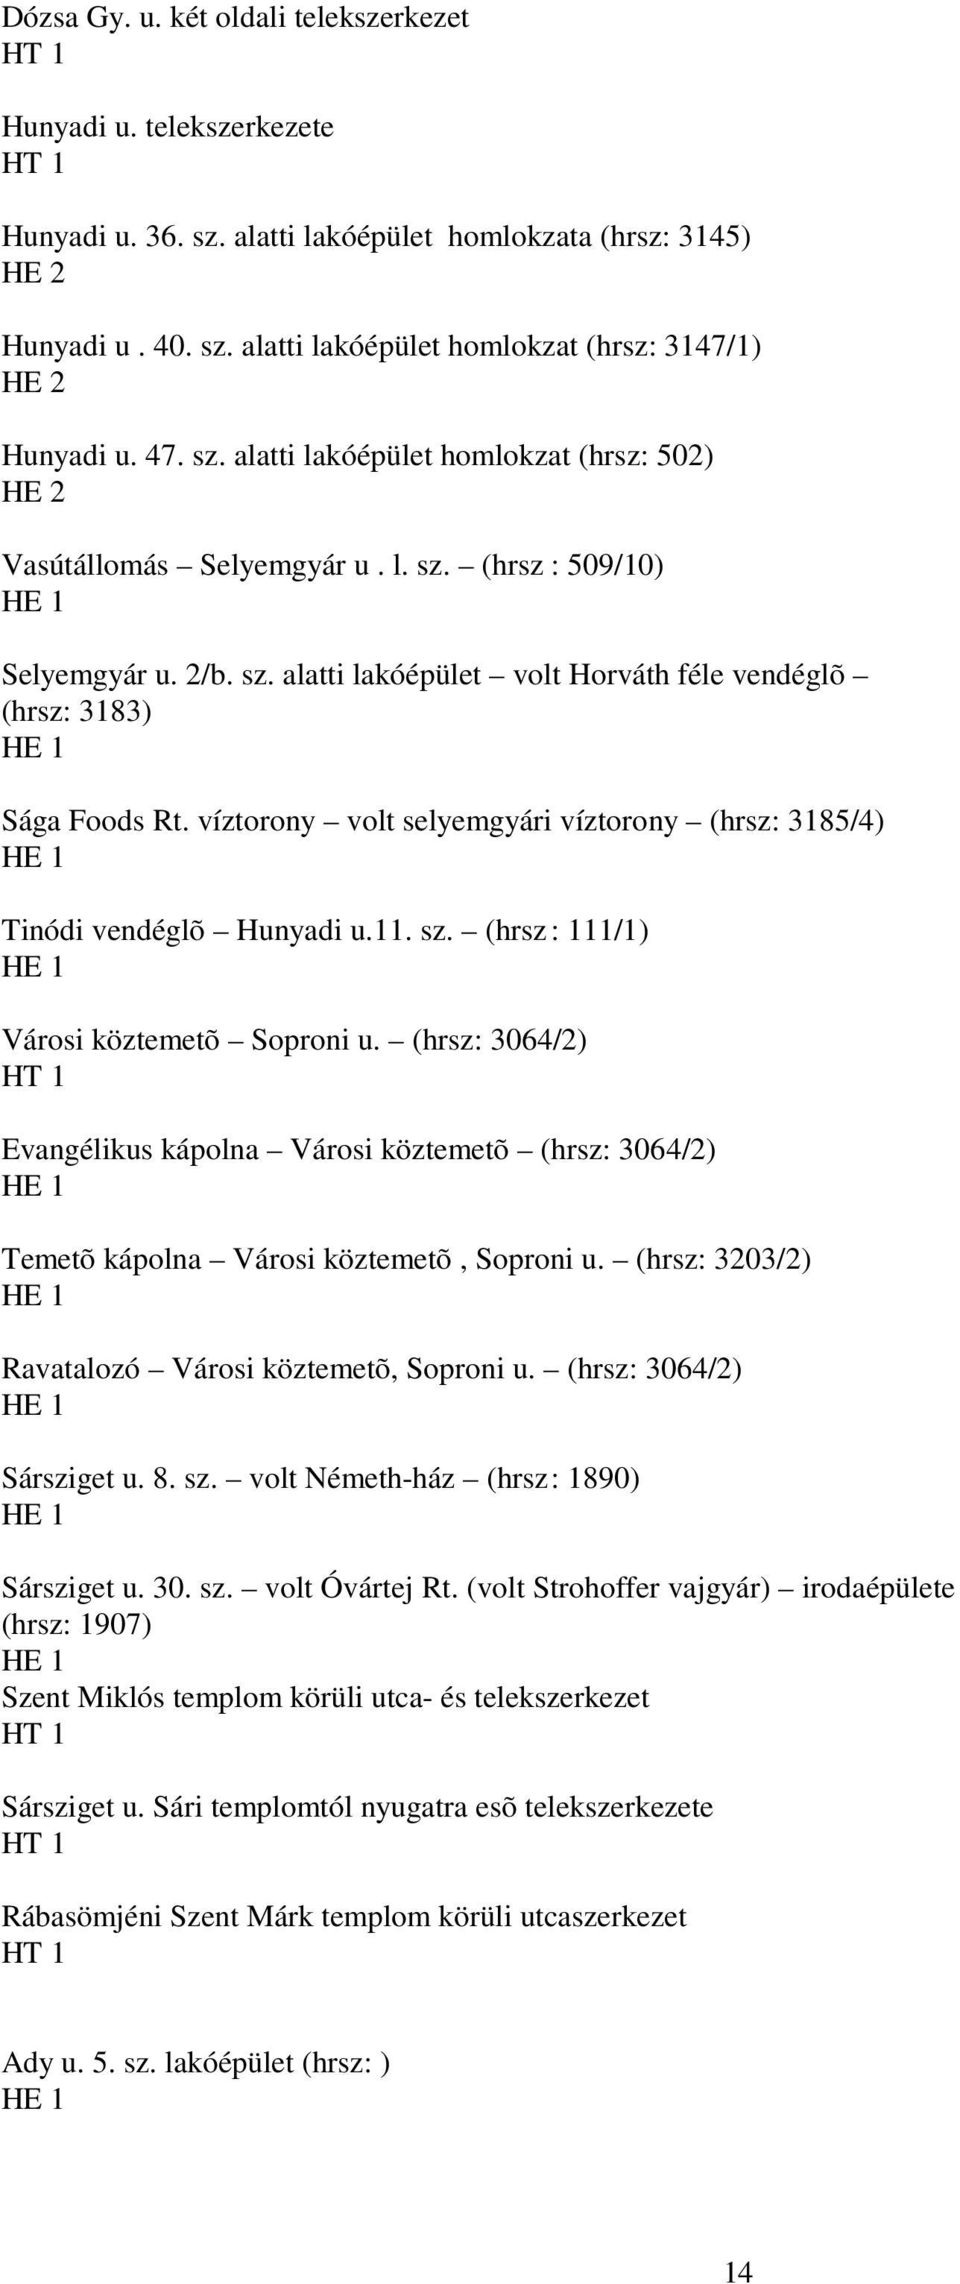 víztorony volt selyemgyári víztorony (hrsz: 3185/4) Tinódi vendéglõ Hunyadi u.11. sz. (hrsz : 111/1) Városi köztemetõ Soproni u.